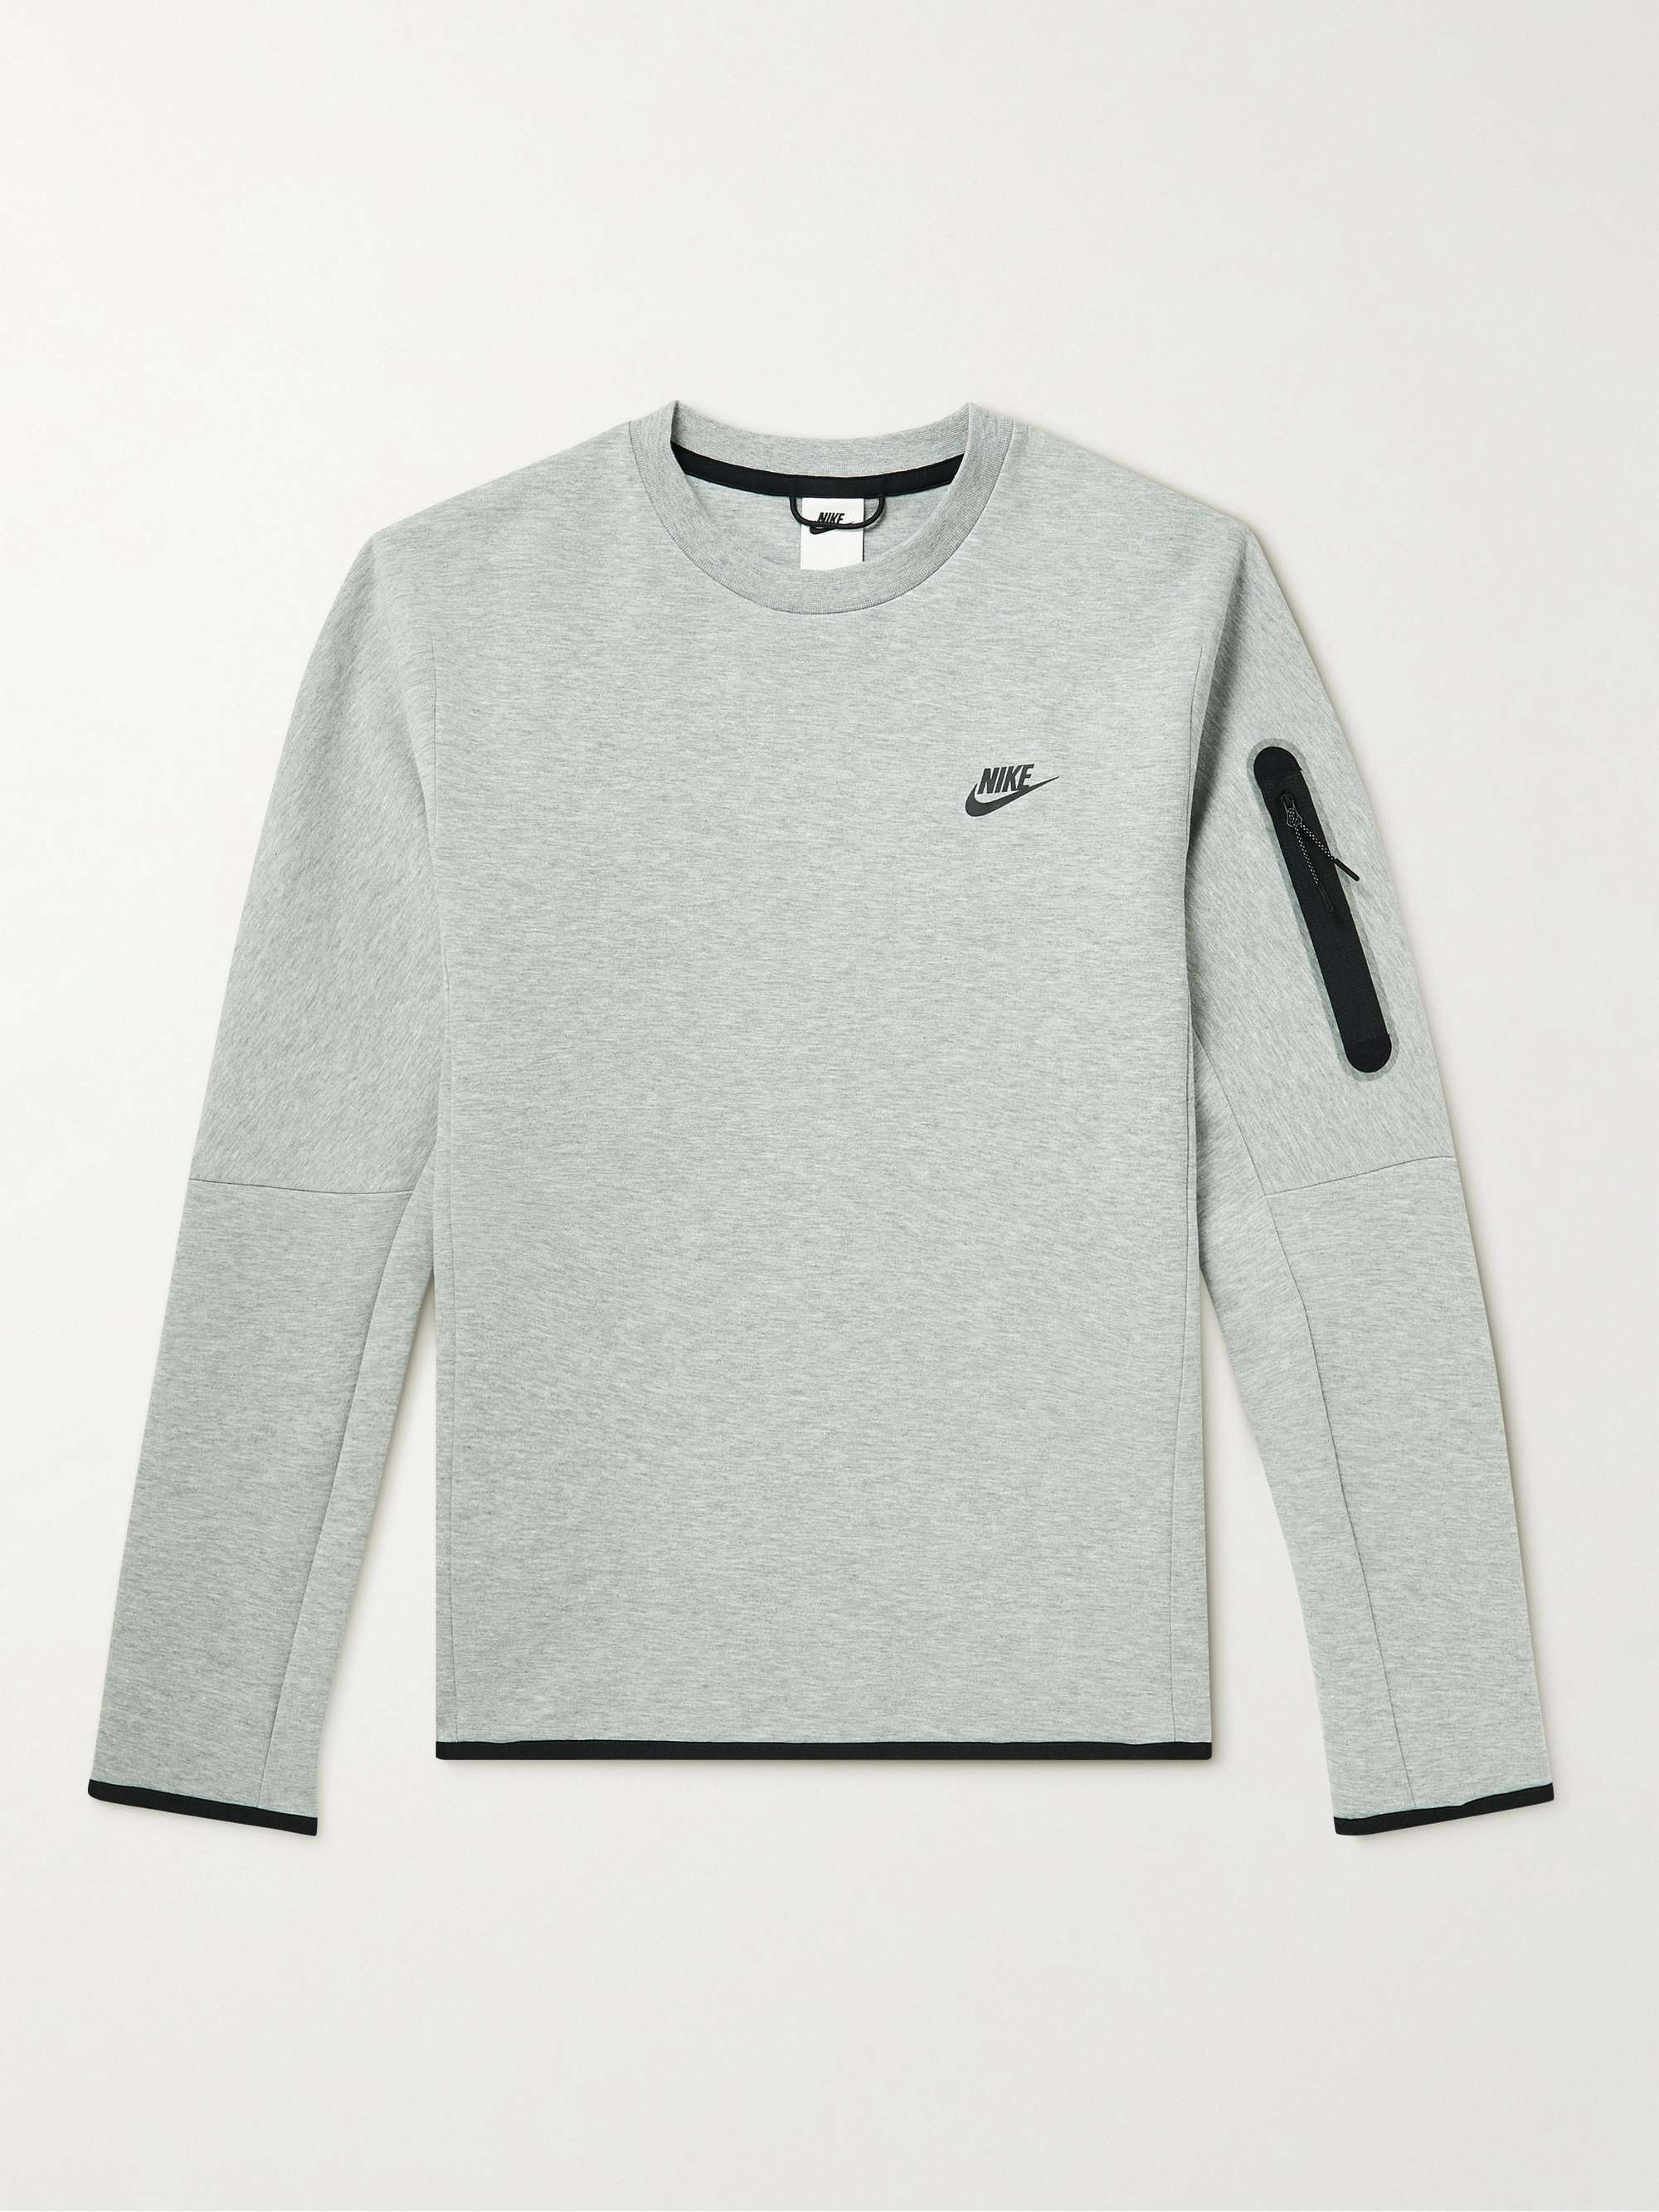 NIKE Sportswear Tech Fleece Sweatshirt for Men | MR PORTER